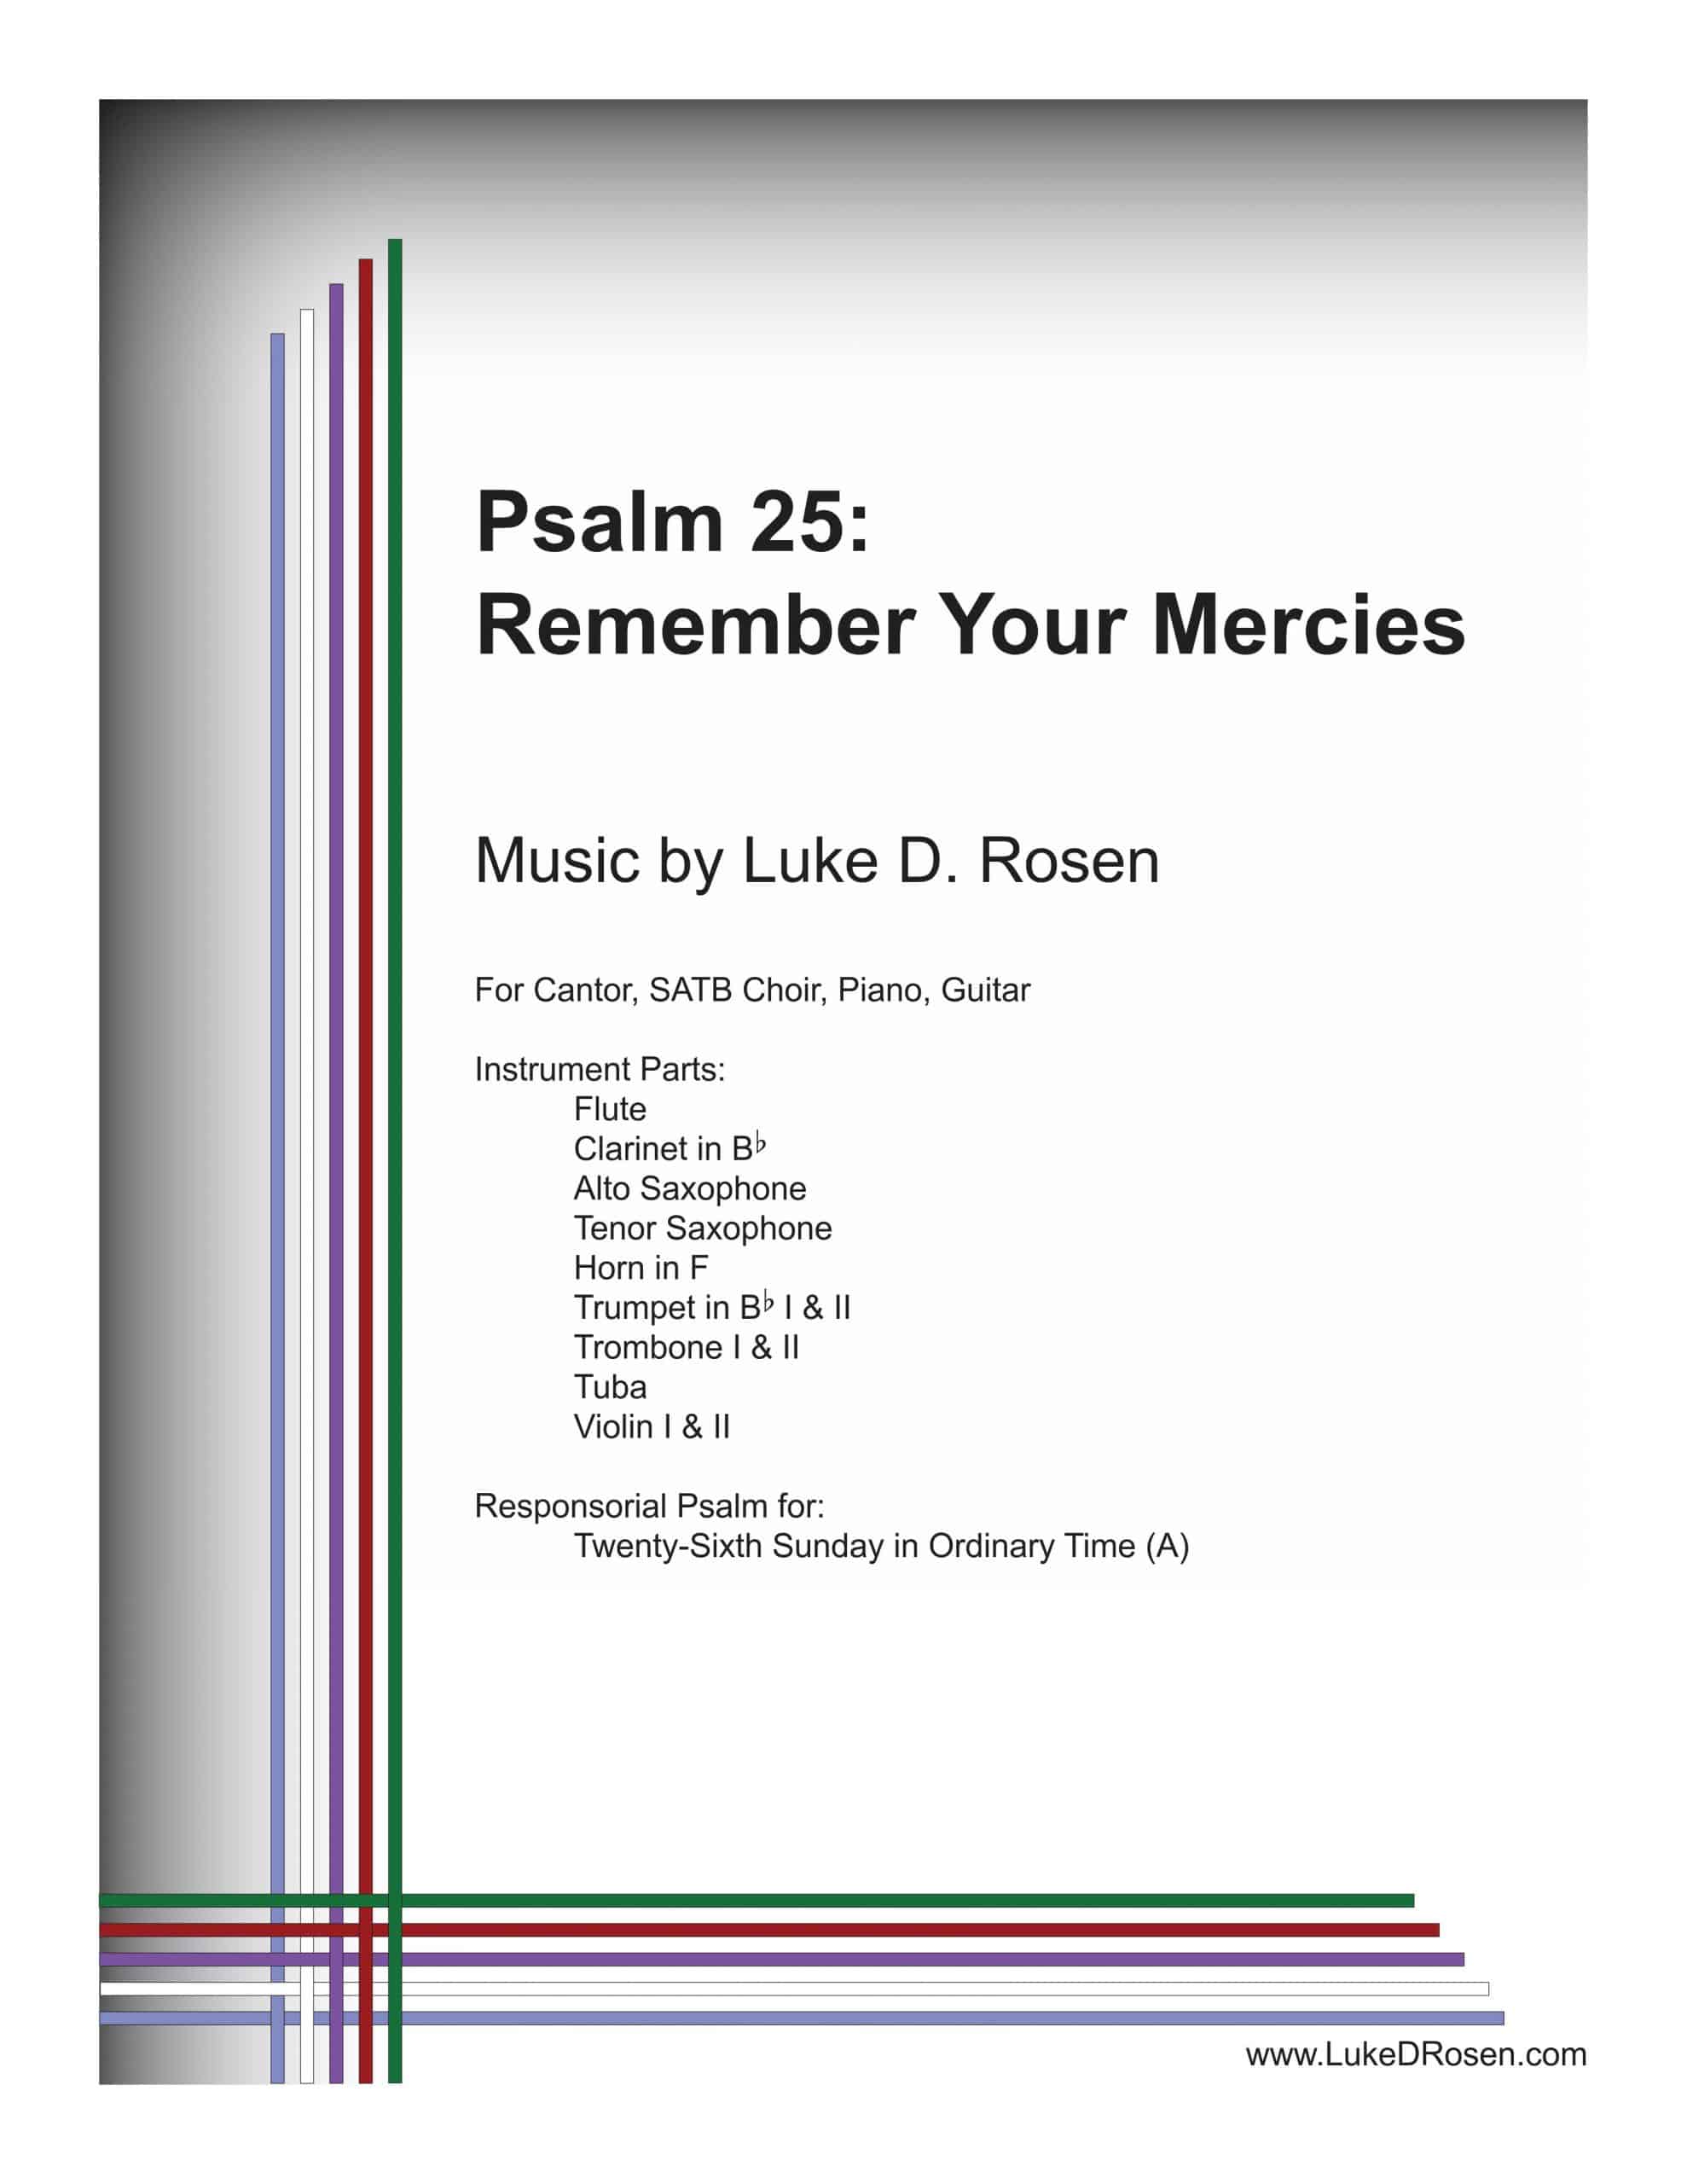 Psalm 25 – Remember Your Mercies (Rosen)